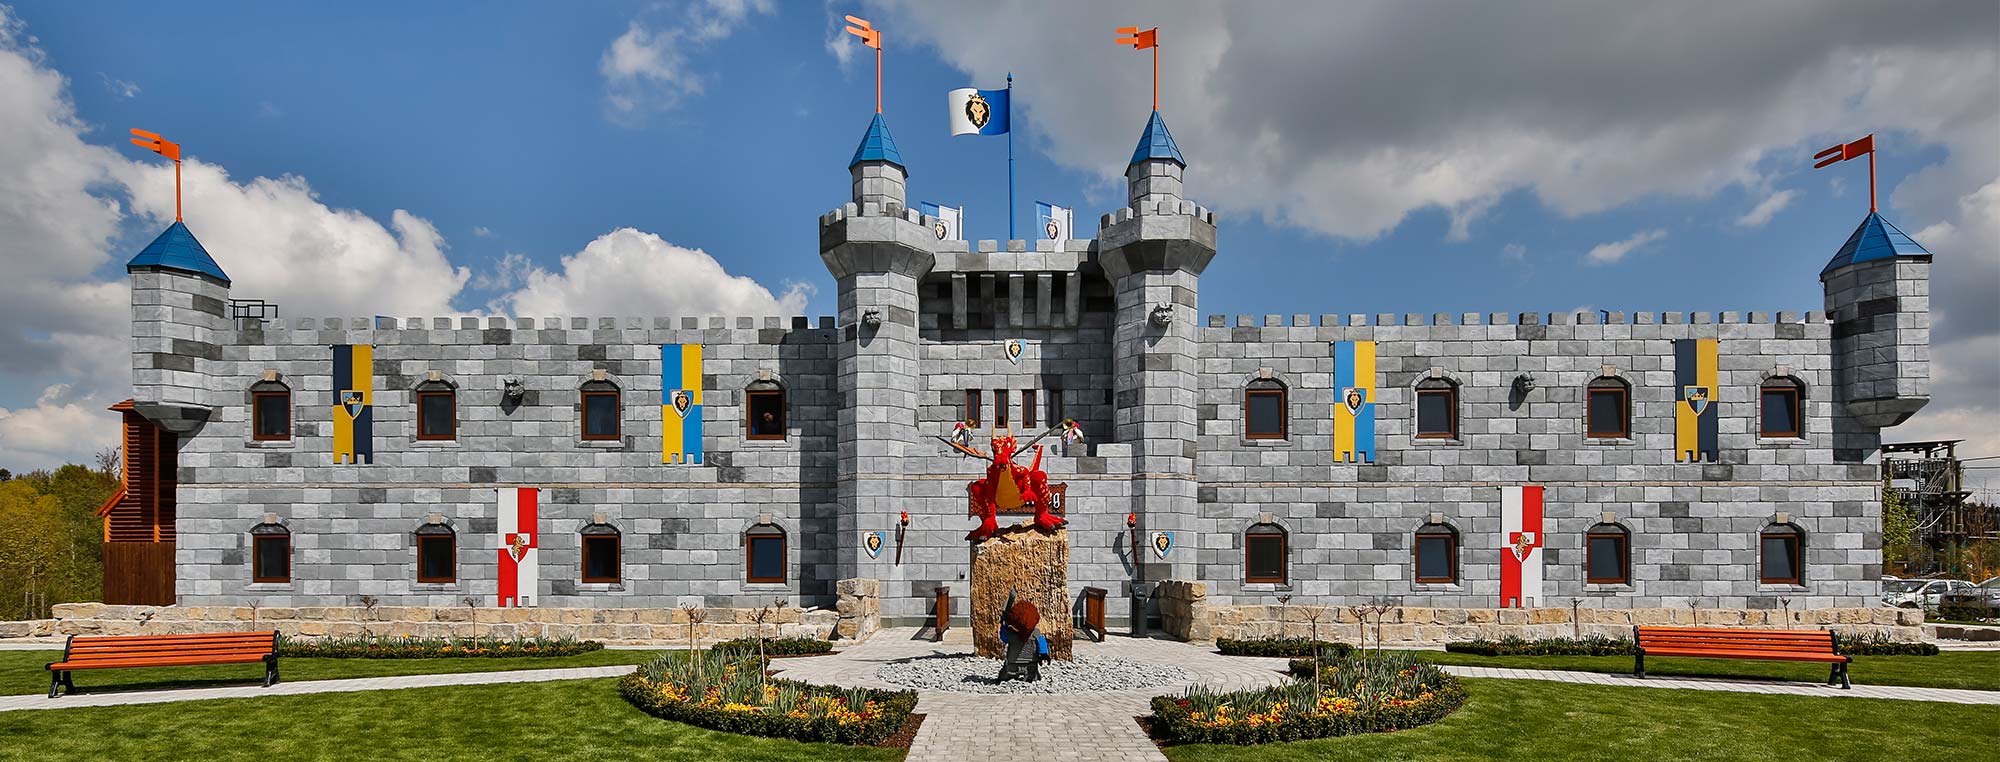 Die Drachenburg der Legoland Deutschland in Günzburg